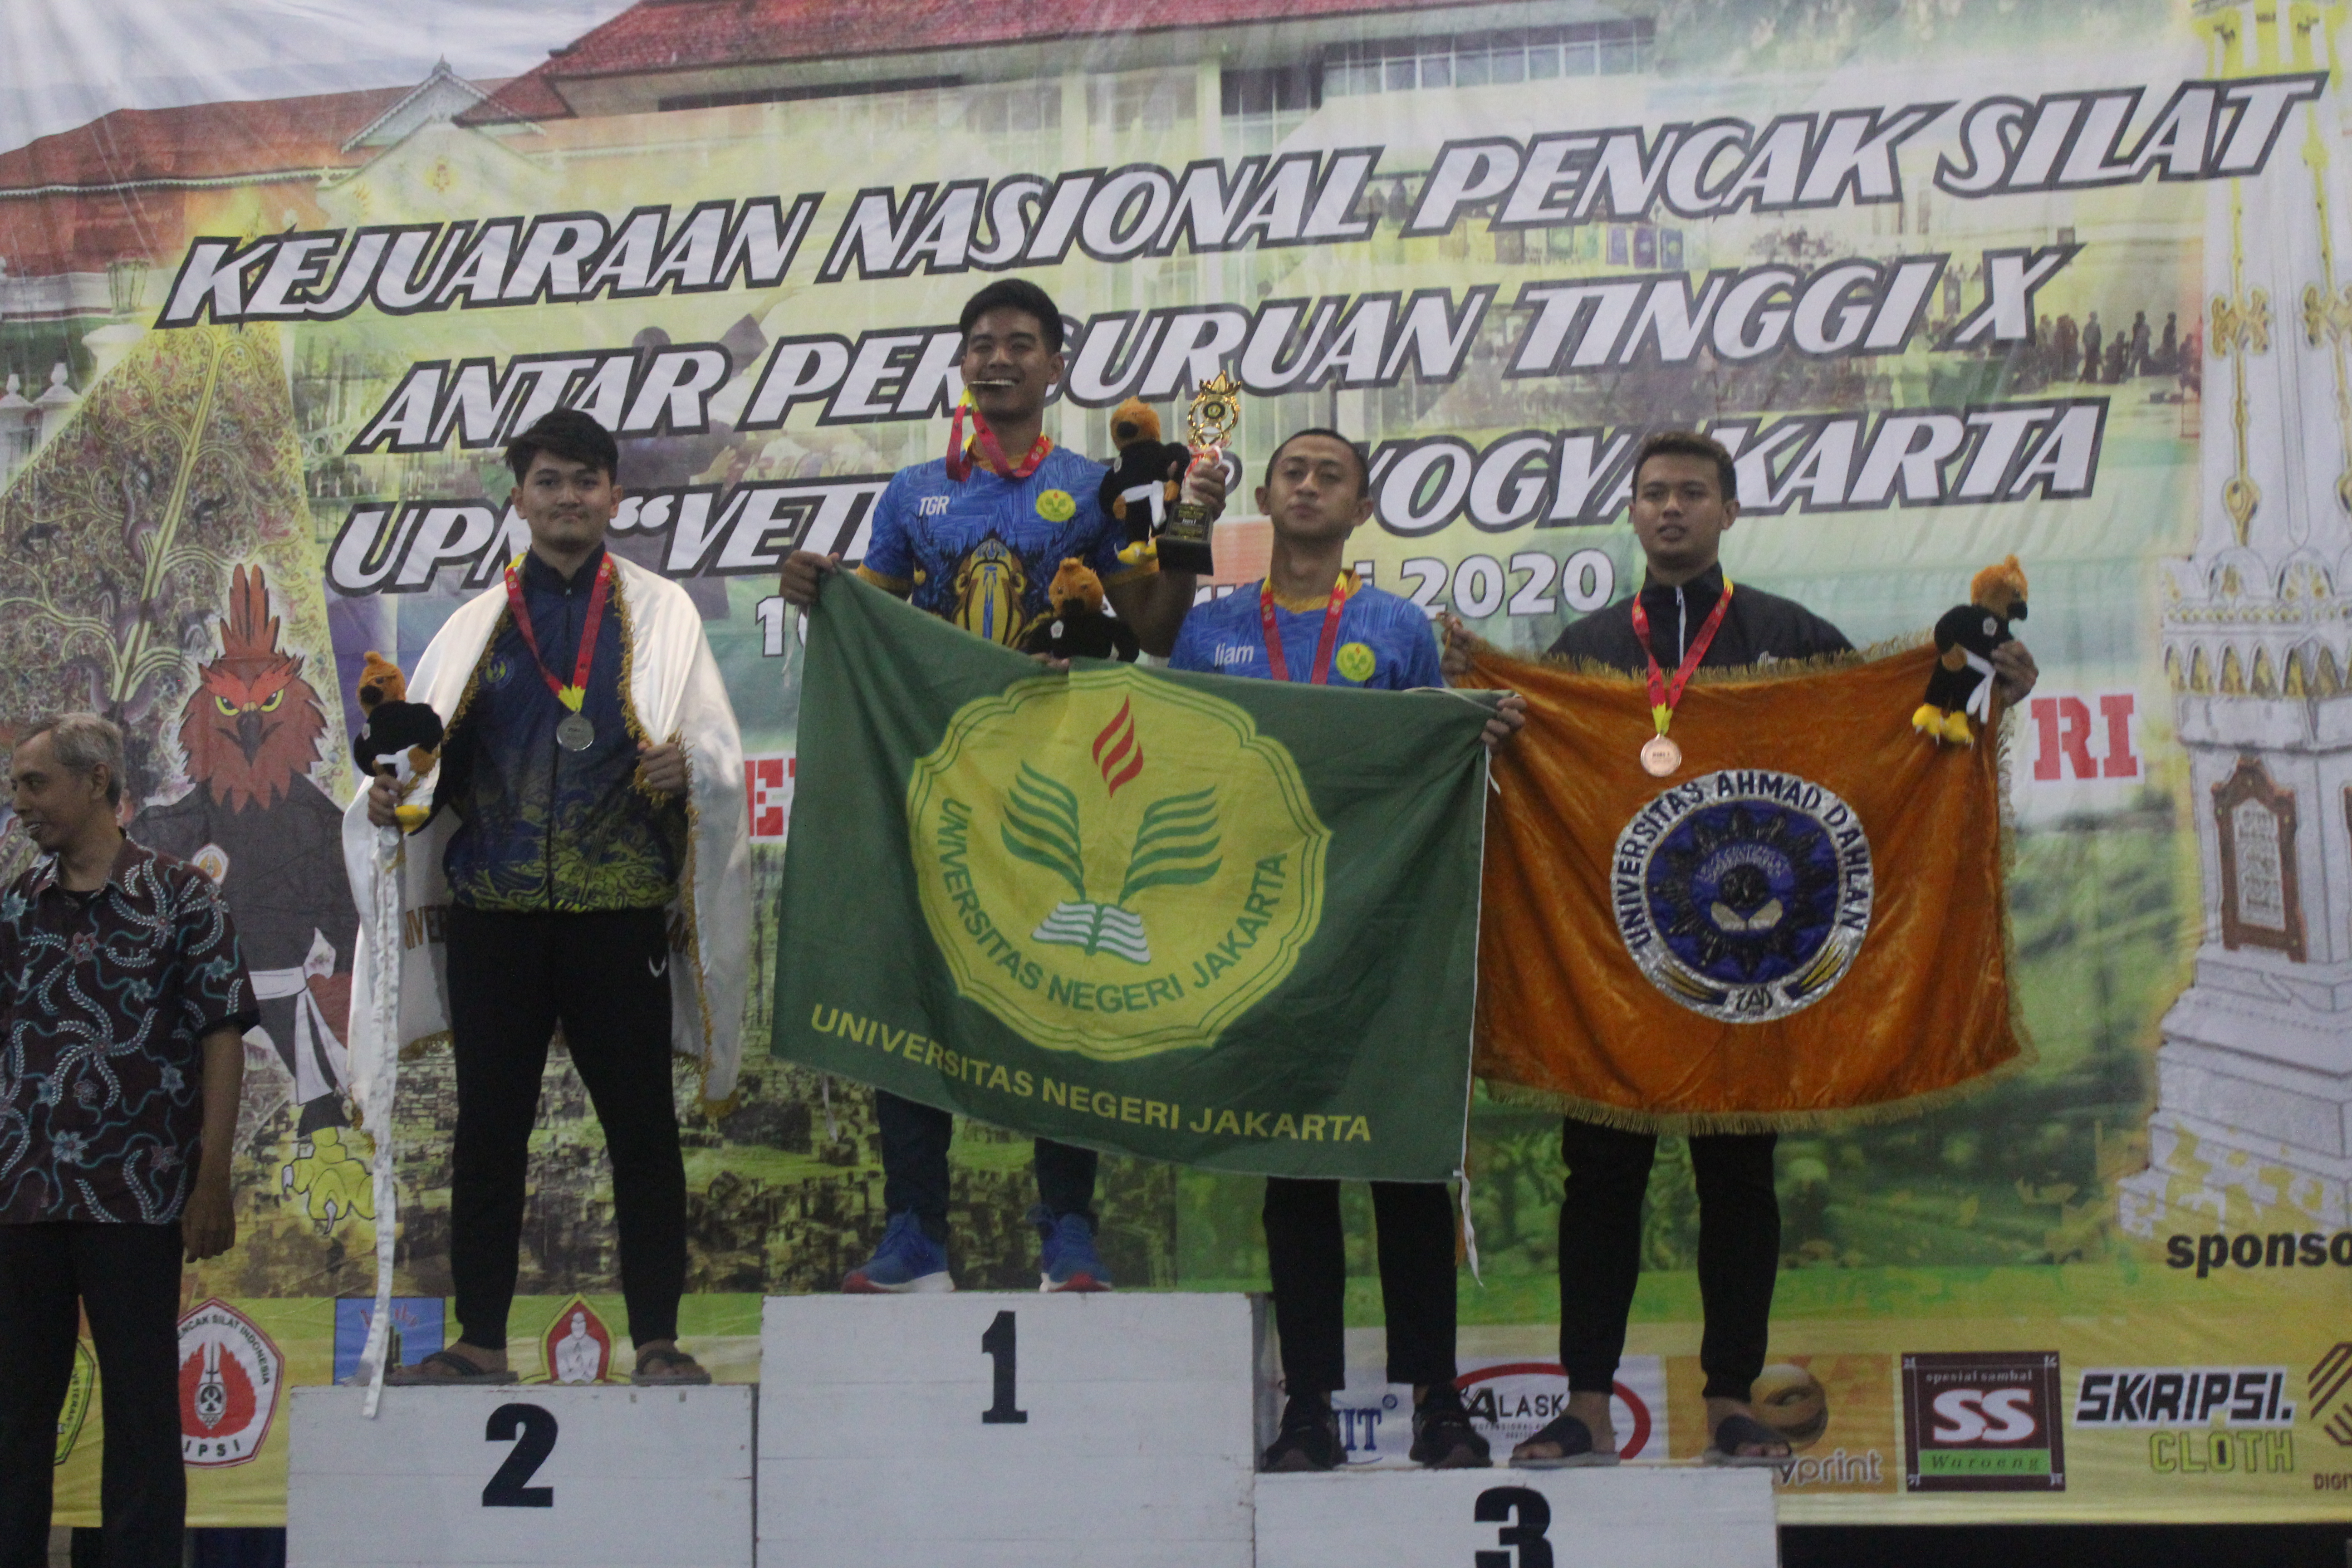 Foto Kejuaraan Nasional Pencak Silat  antar Perguruan Tinggi UPN Veteran Yogyakarta ke X 2020